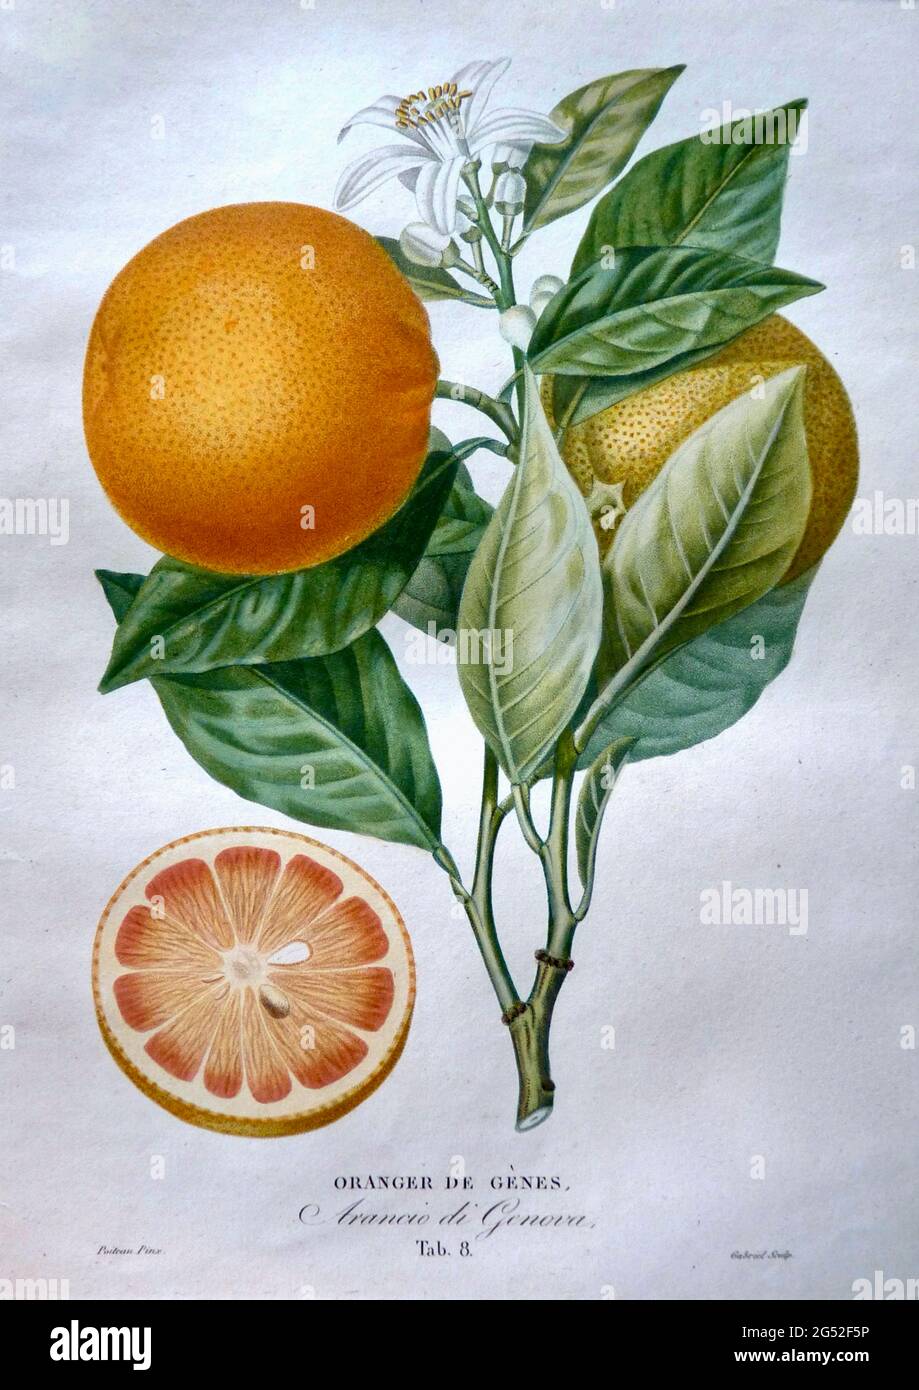 Oranger de Genes von Pierre Antoine Poiteau. Vintage Fruit Print zeigt Früchte, Blätter und Blumen mit Fruchtquerschnitt. Zwischen 1818 und 1822. Stockfoto